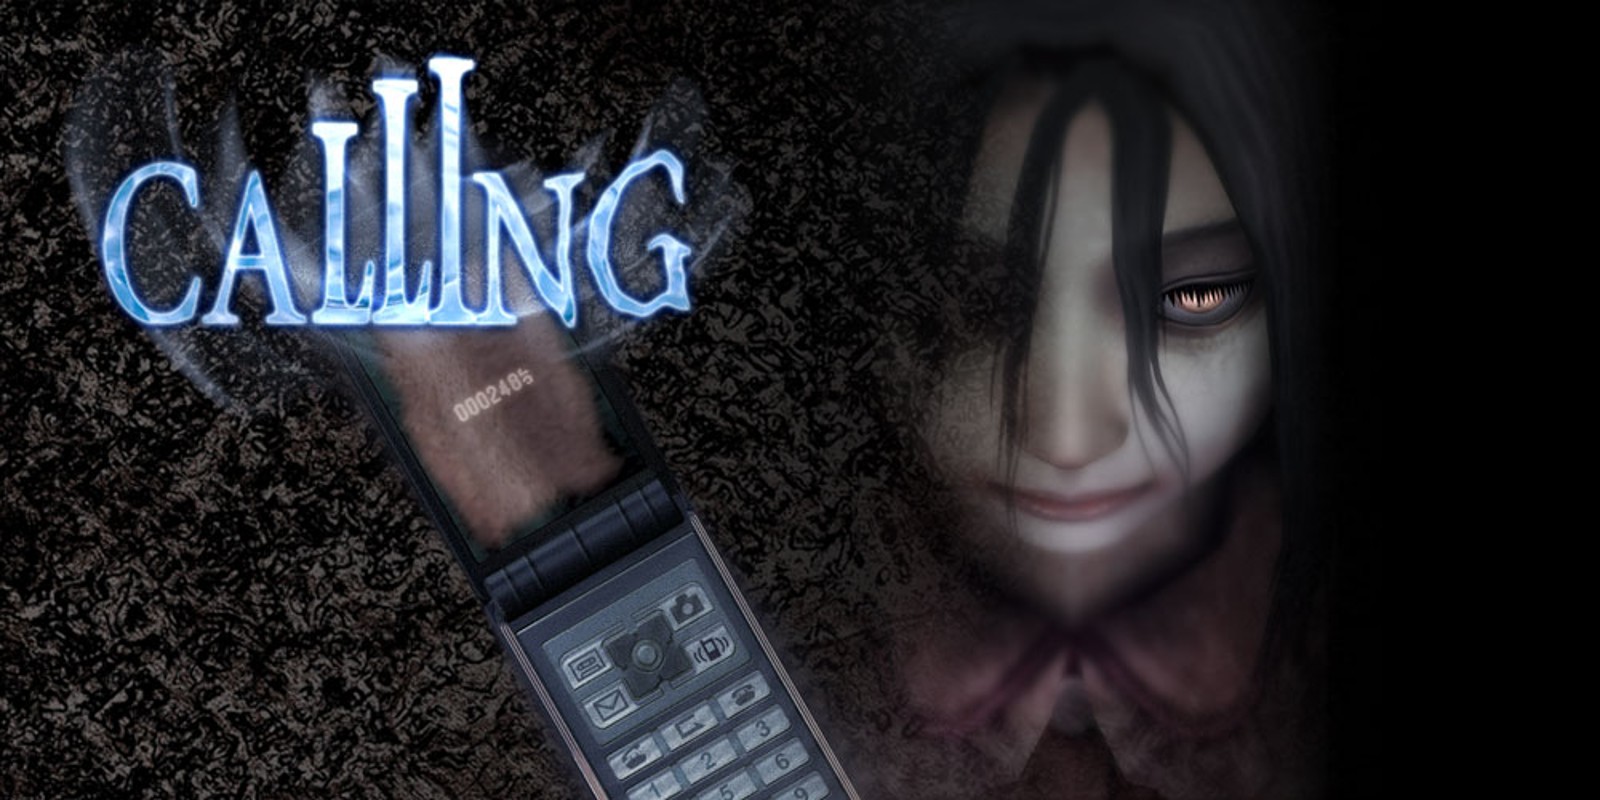 Tijdig Kangoeroe gloeilamp Calling | Wii | Games | Nintendo